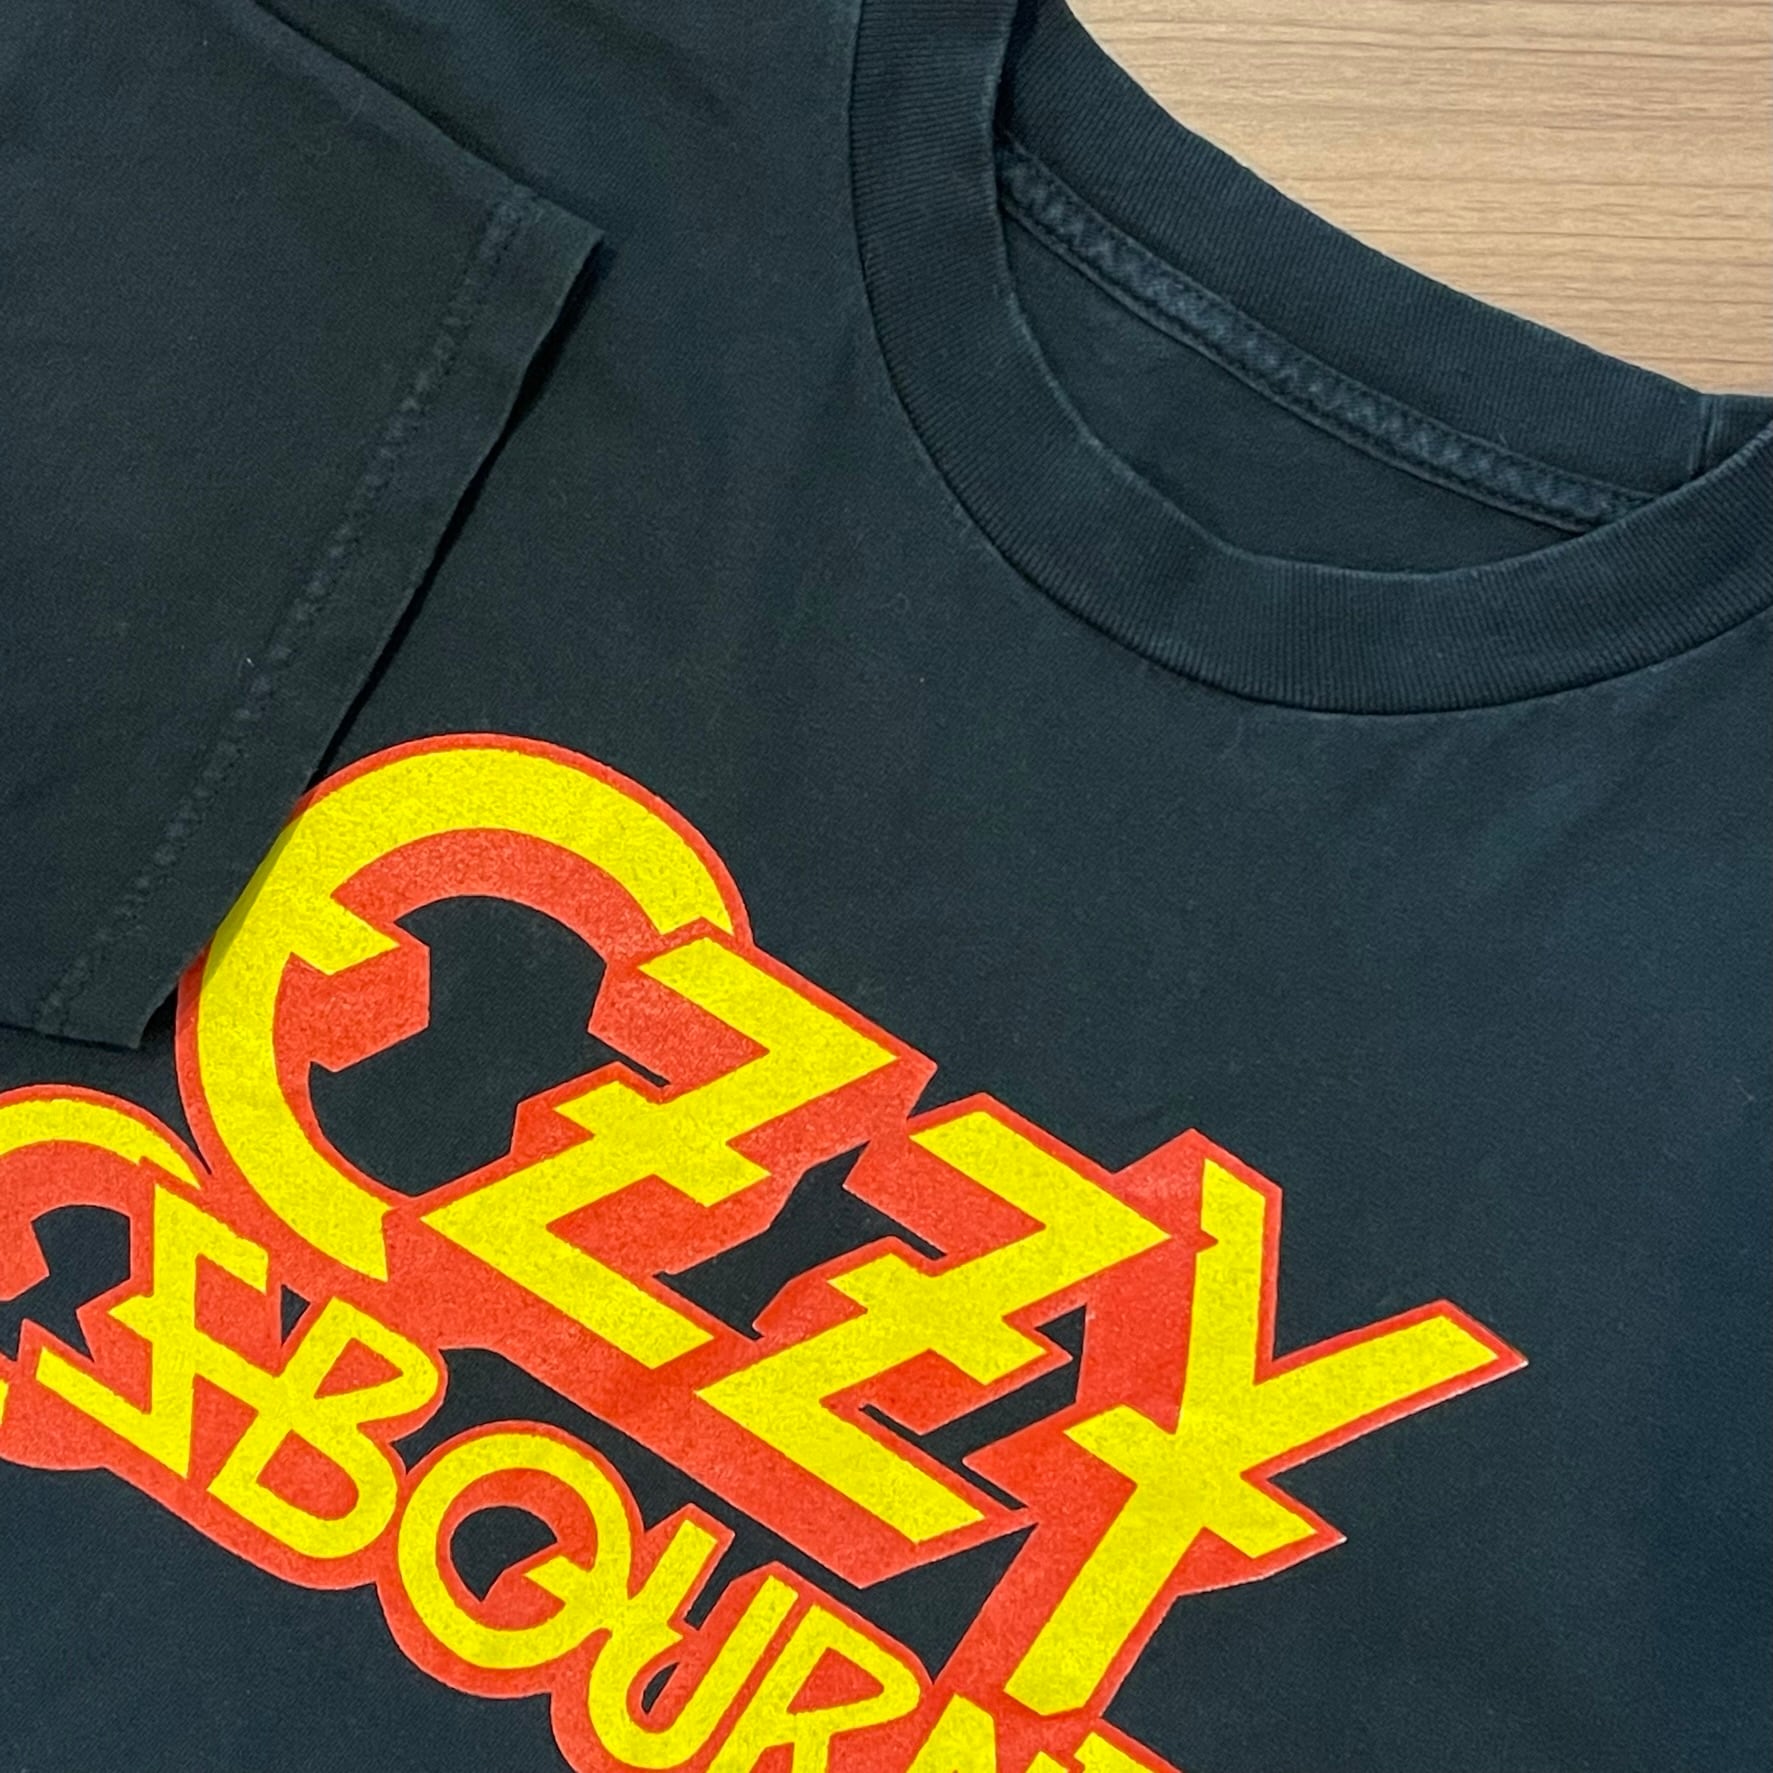 90's OZZY OSBOURNE オジーオズボーン バンドTシャツ